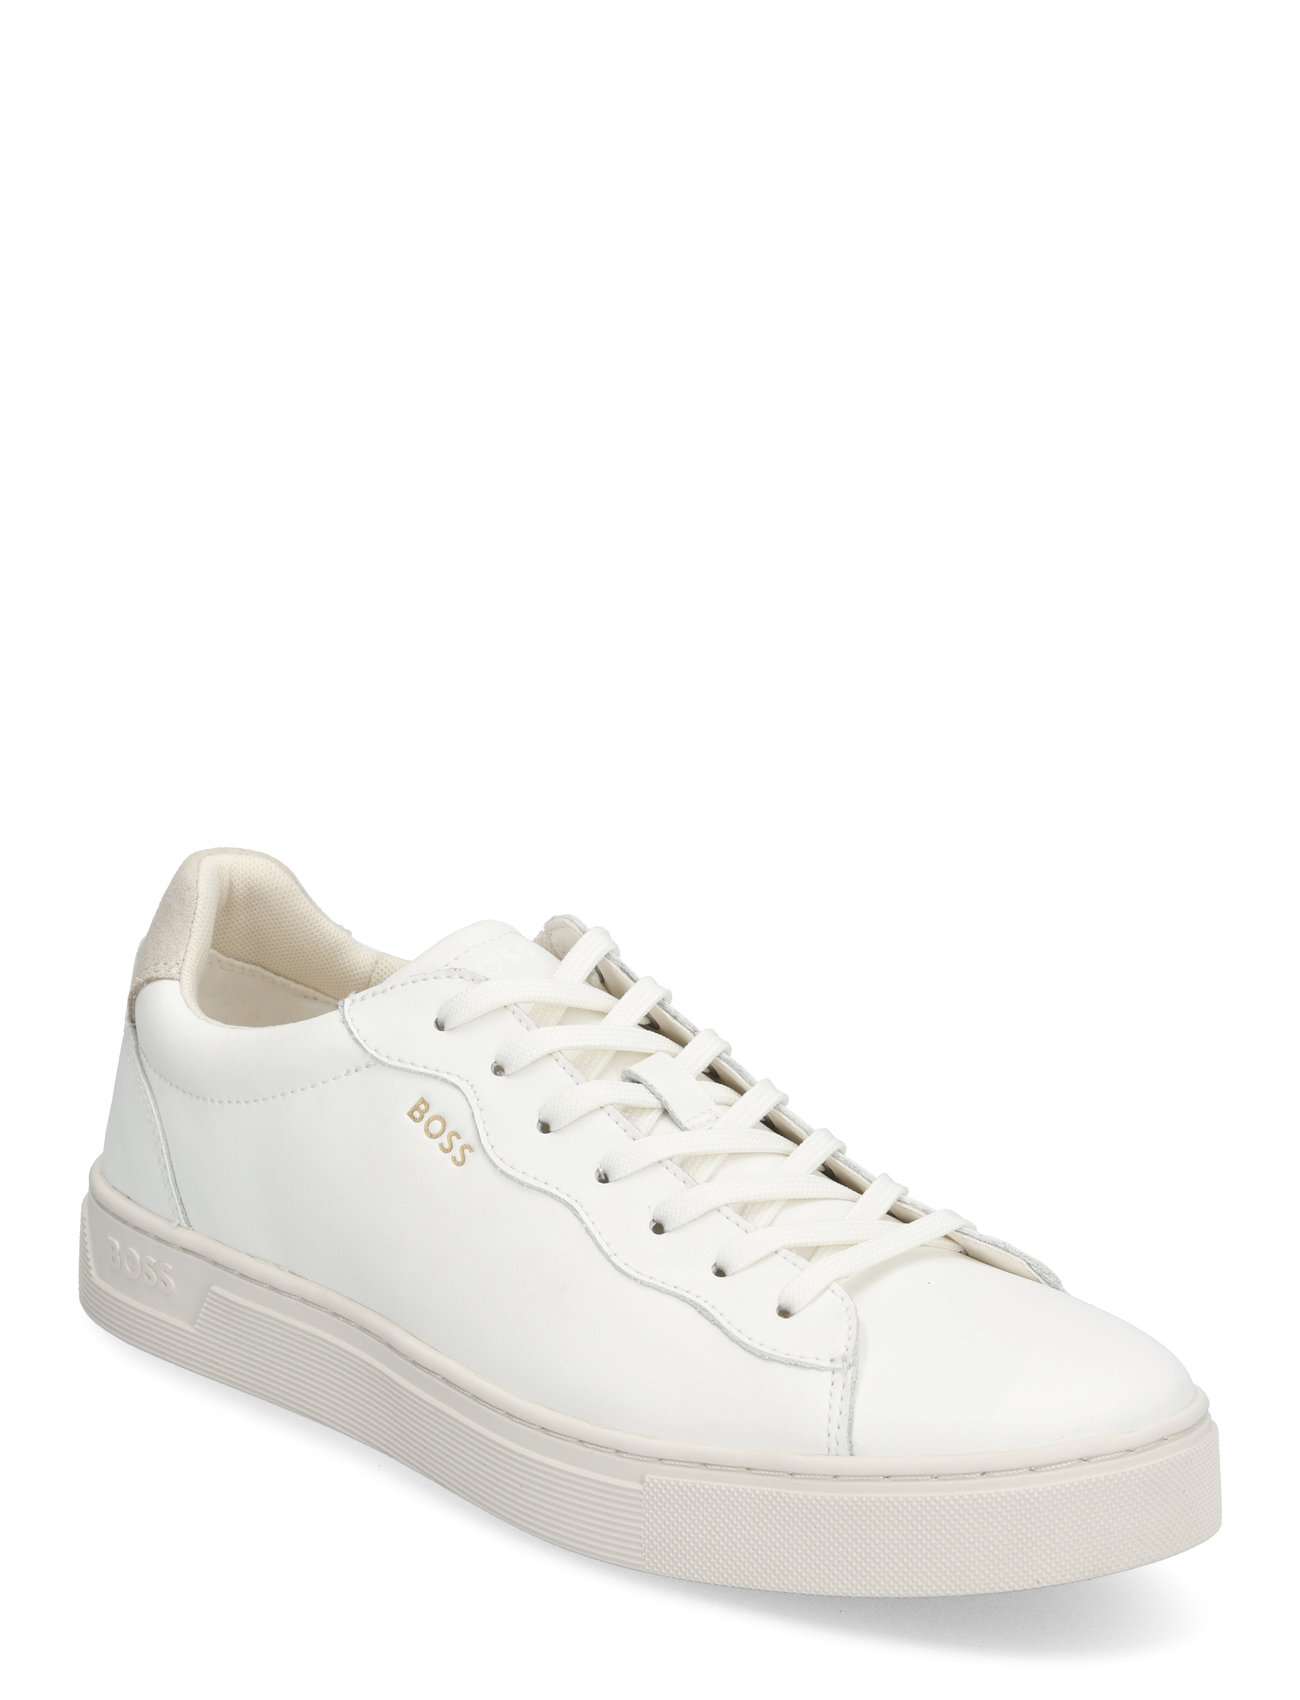 Rhys_Tenn_Fl Low-top Sneakers White BOSS